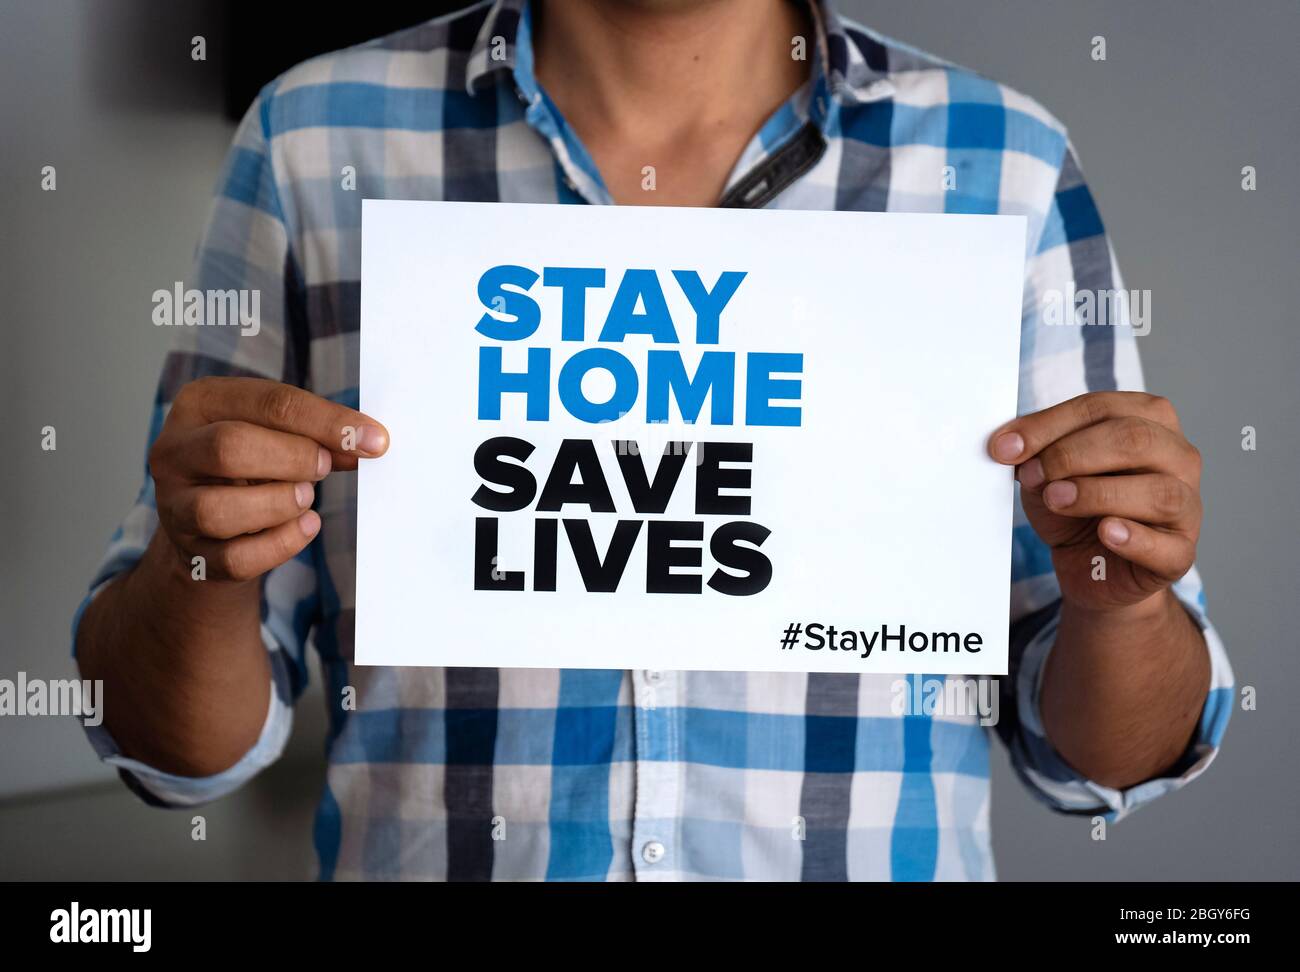 Man Holding sign 'Stay Home Save lifes' mensaje global en medio de la crisis del coronavirus. Mensaje de cuarentena en todo el mundo para combatir la pandemia de COVID-19. Foto de stock